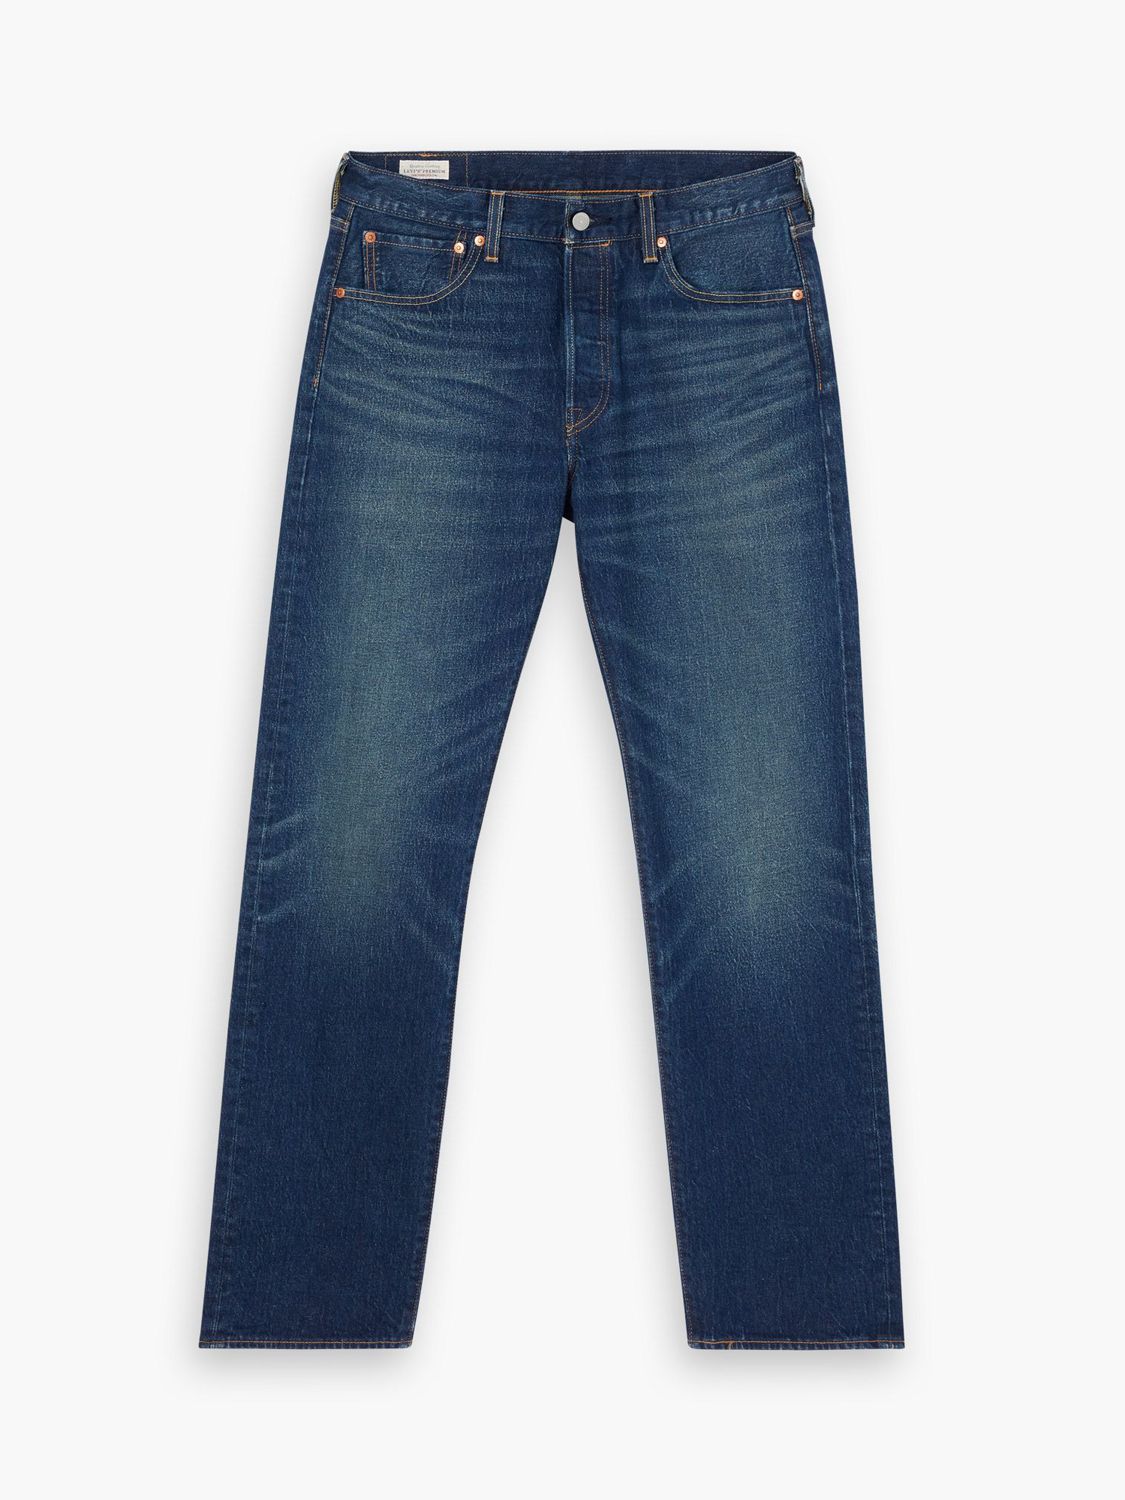 Levi's 501 Original Straight Jeans, Vintage Authentic